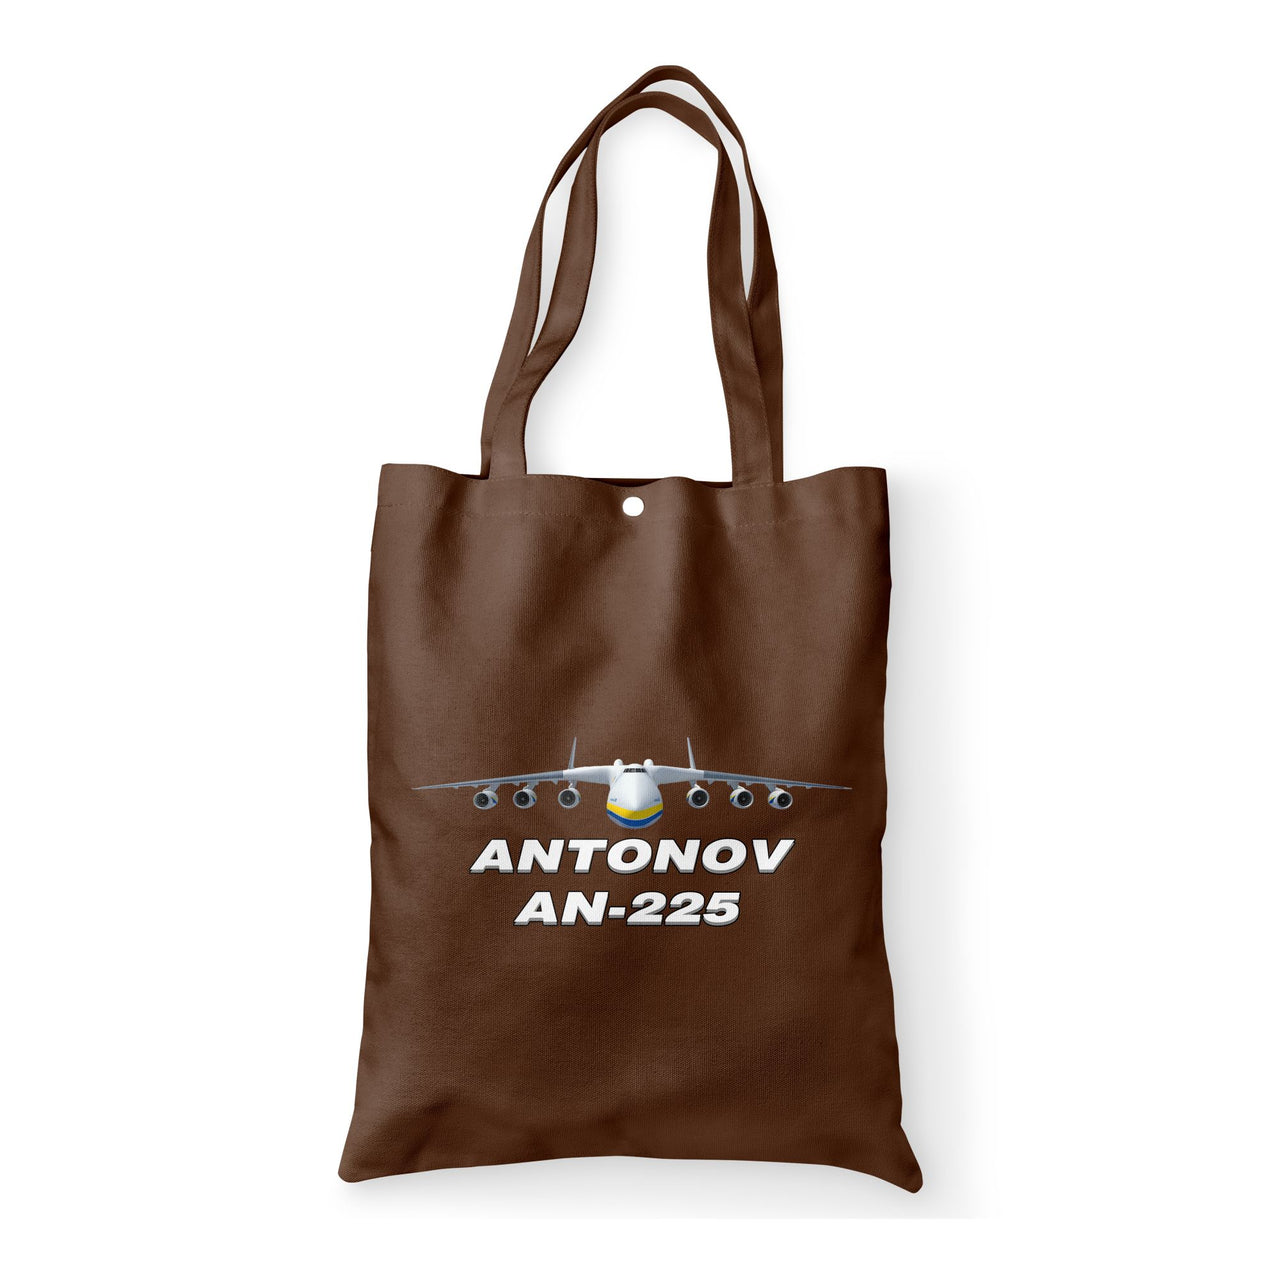 Antonov AN-225 (16) Designed Tote Bags